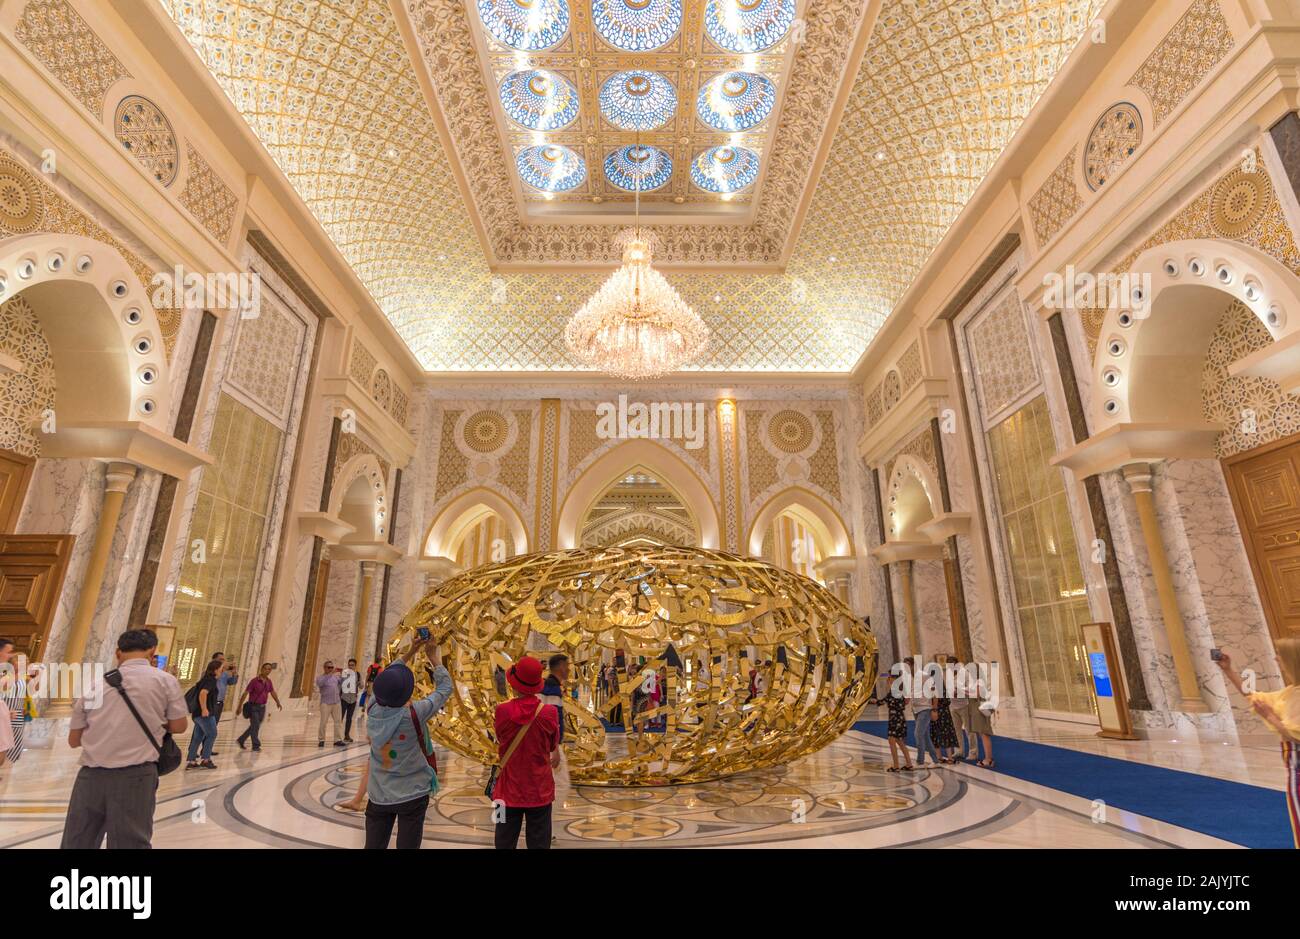 Abu Dhabi, Vereinigte Arabische Emirate: Die prächtige Inneneinrichtung der Präsidentenpalast (Qasr Al Watan), der Palast der Nation, Arabische golden Kunst installation Stockfoto